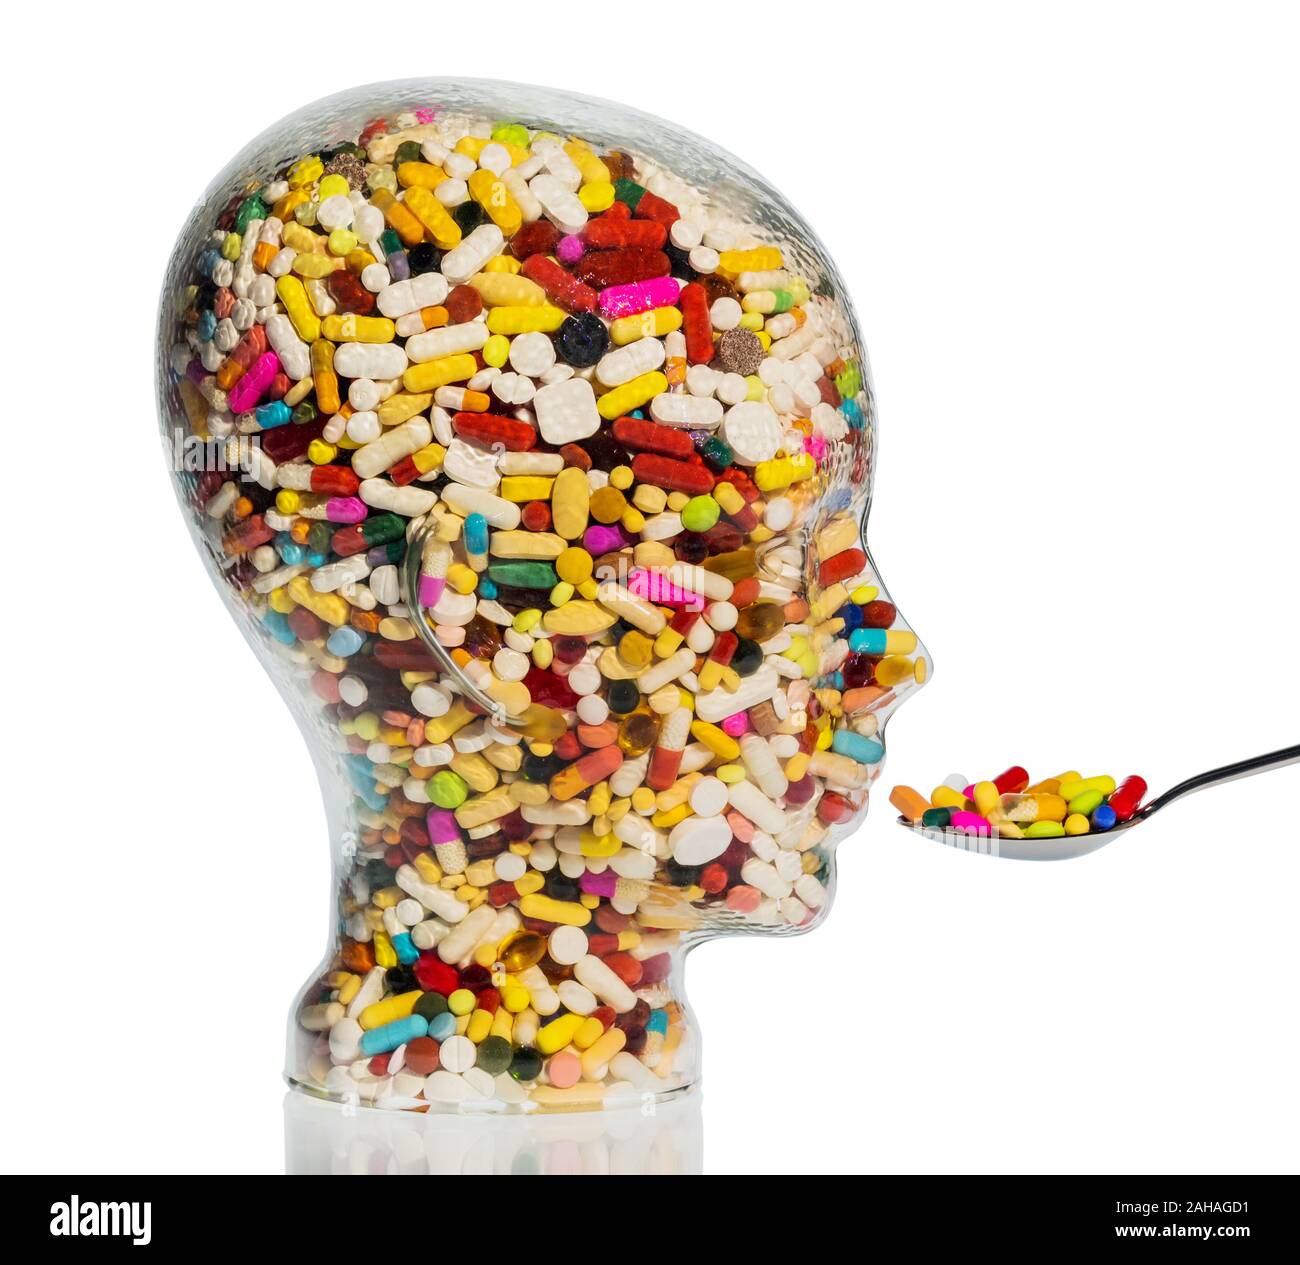 Glaskopf mit bunten Tabletten, Symbolfoto für Medizin, Heilmittel und Tablettensucht Foto Stock